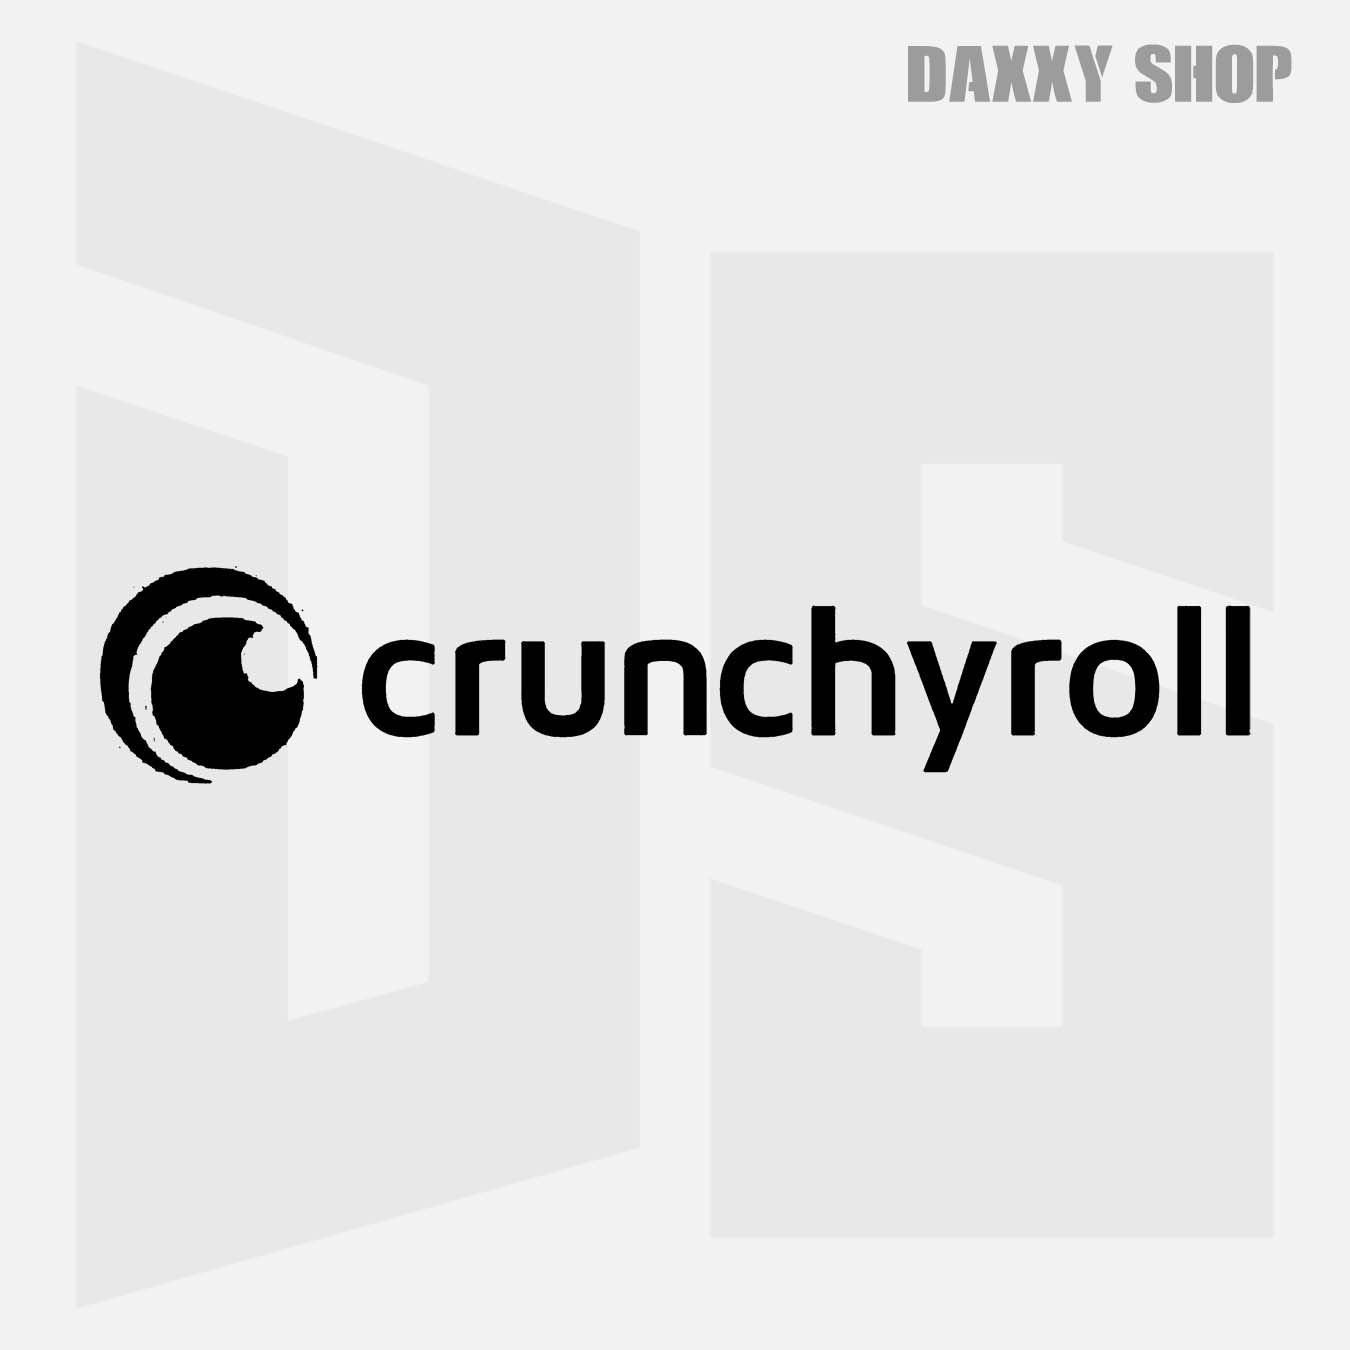 Crunchyroll - daxxyshop.com